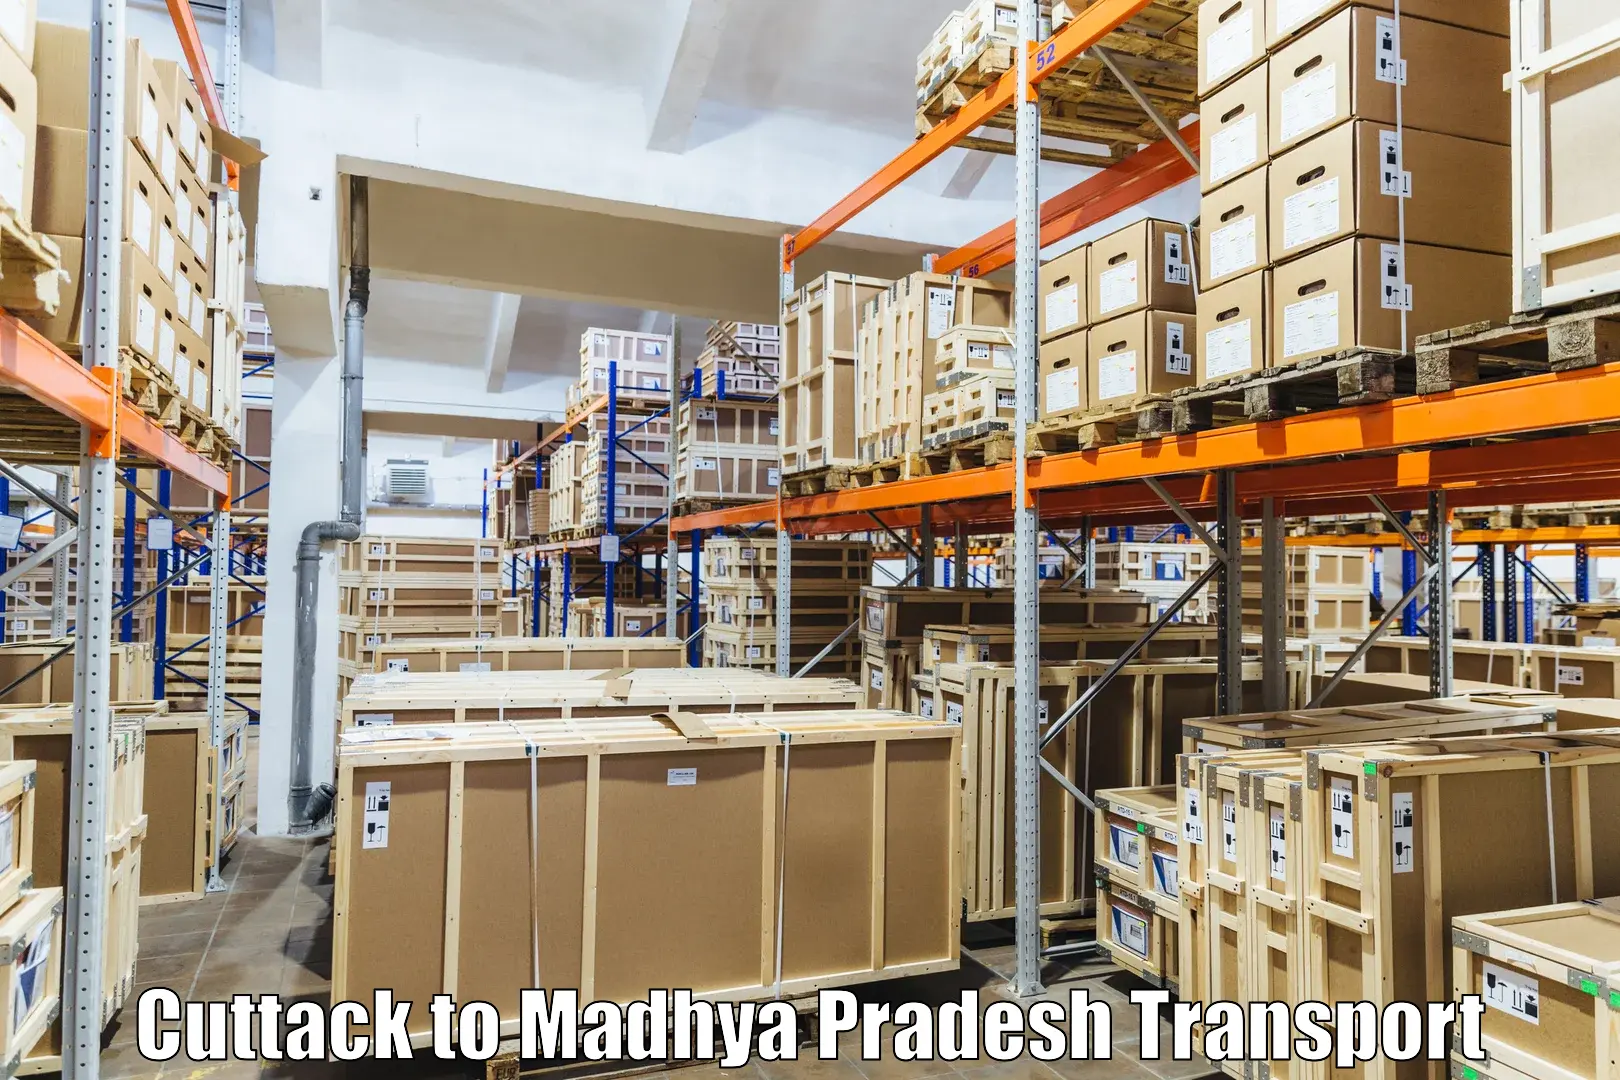 Furniture transport service in Cuttack to Bhopal